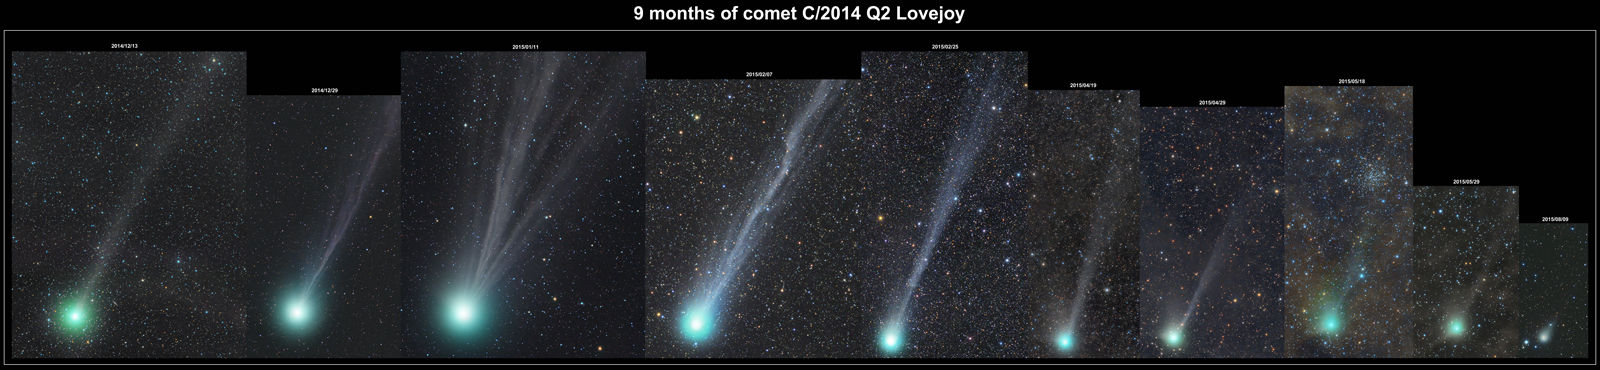 10 comete - C/2014 Q2 Lovejoy